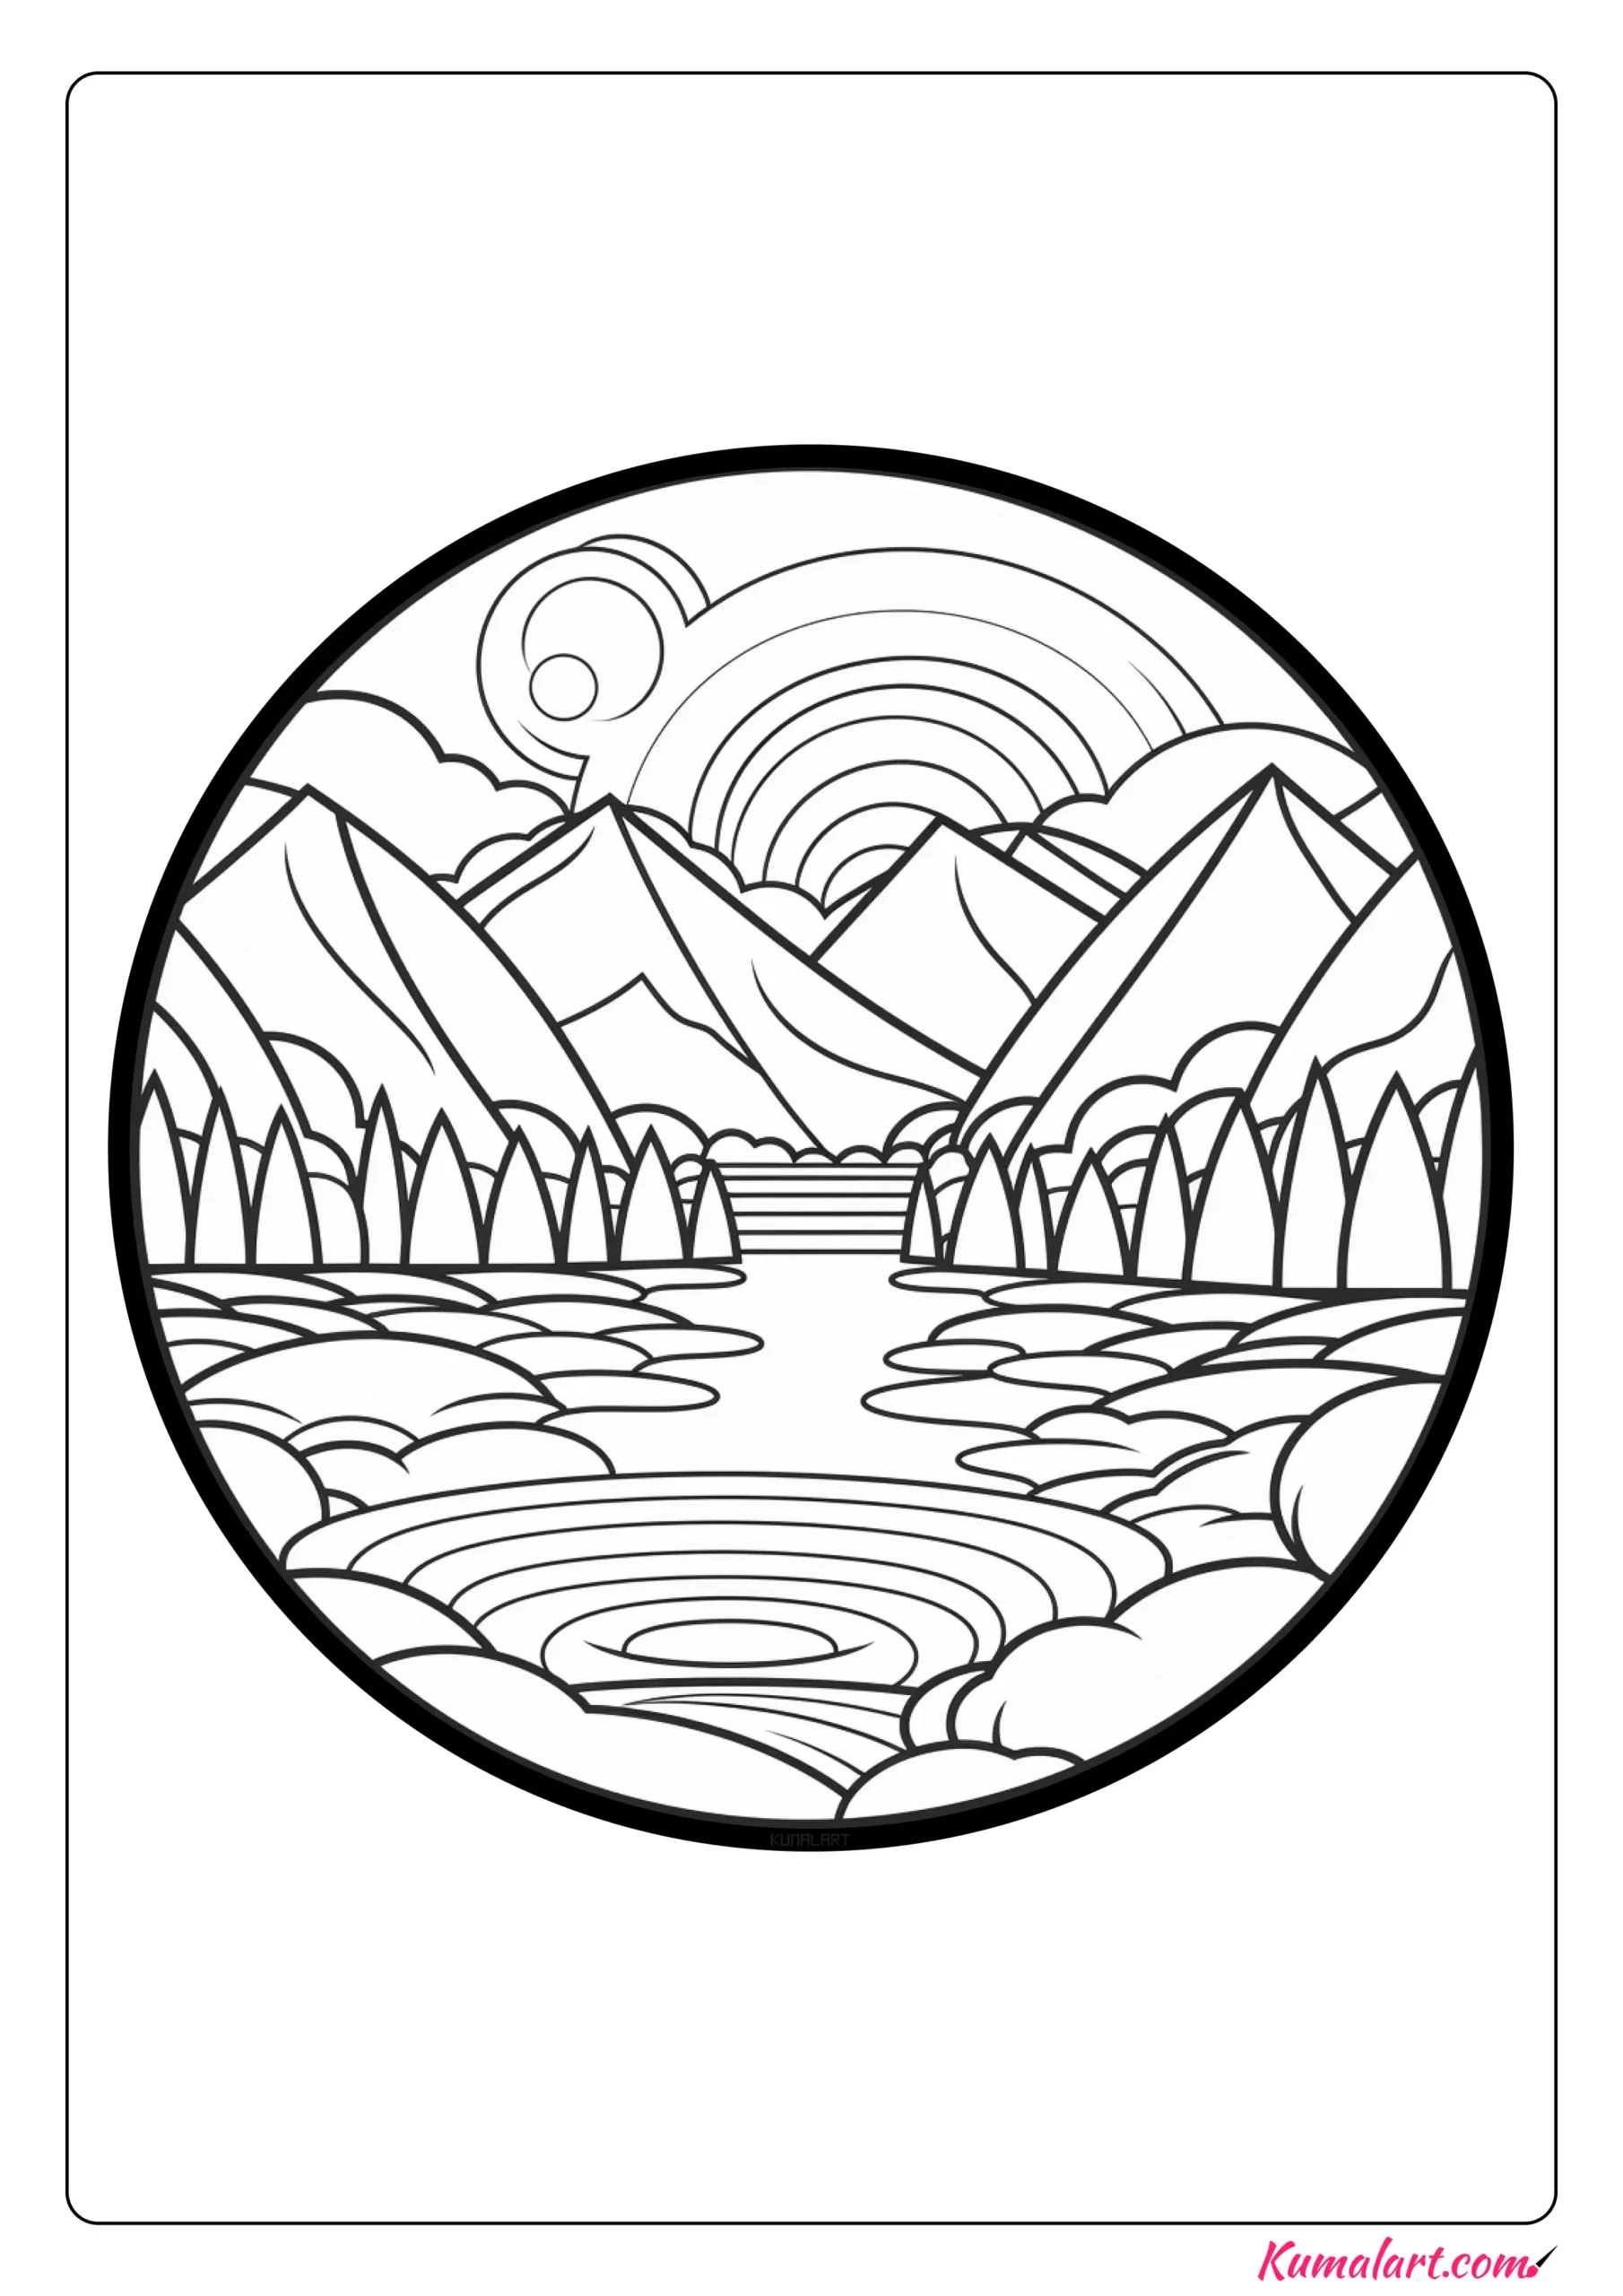 Endless River Mandala Coloring Page